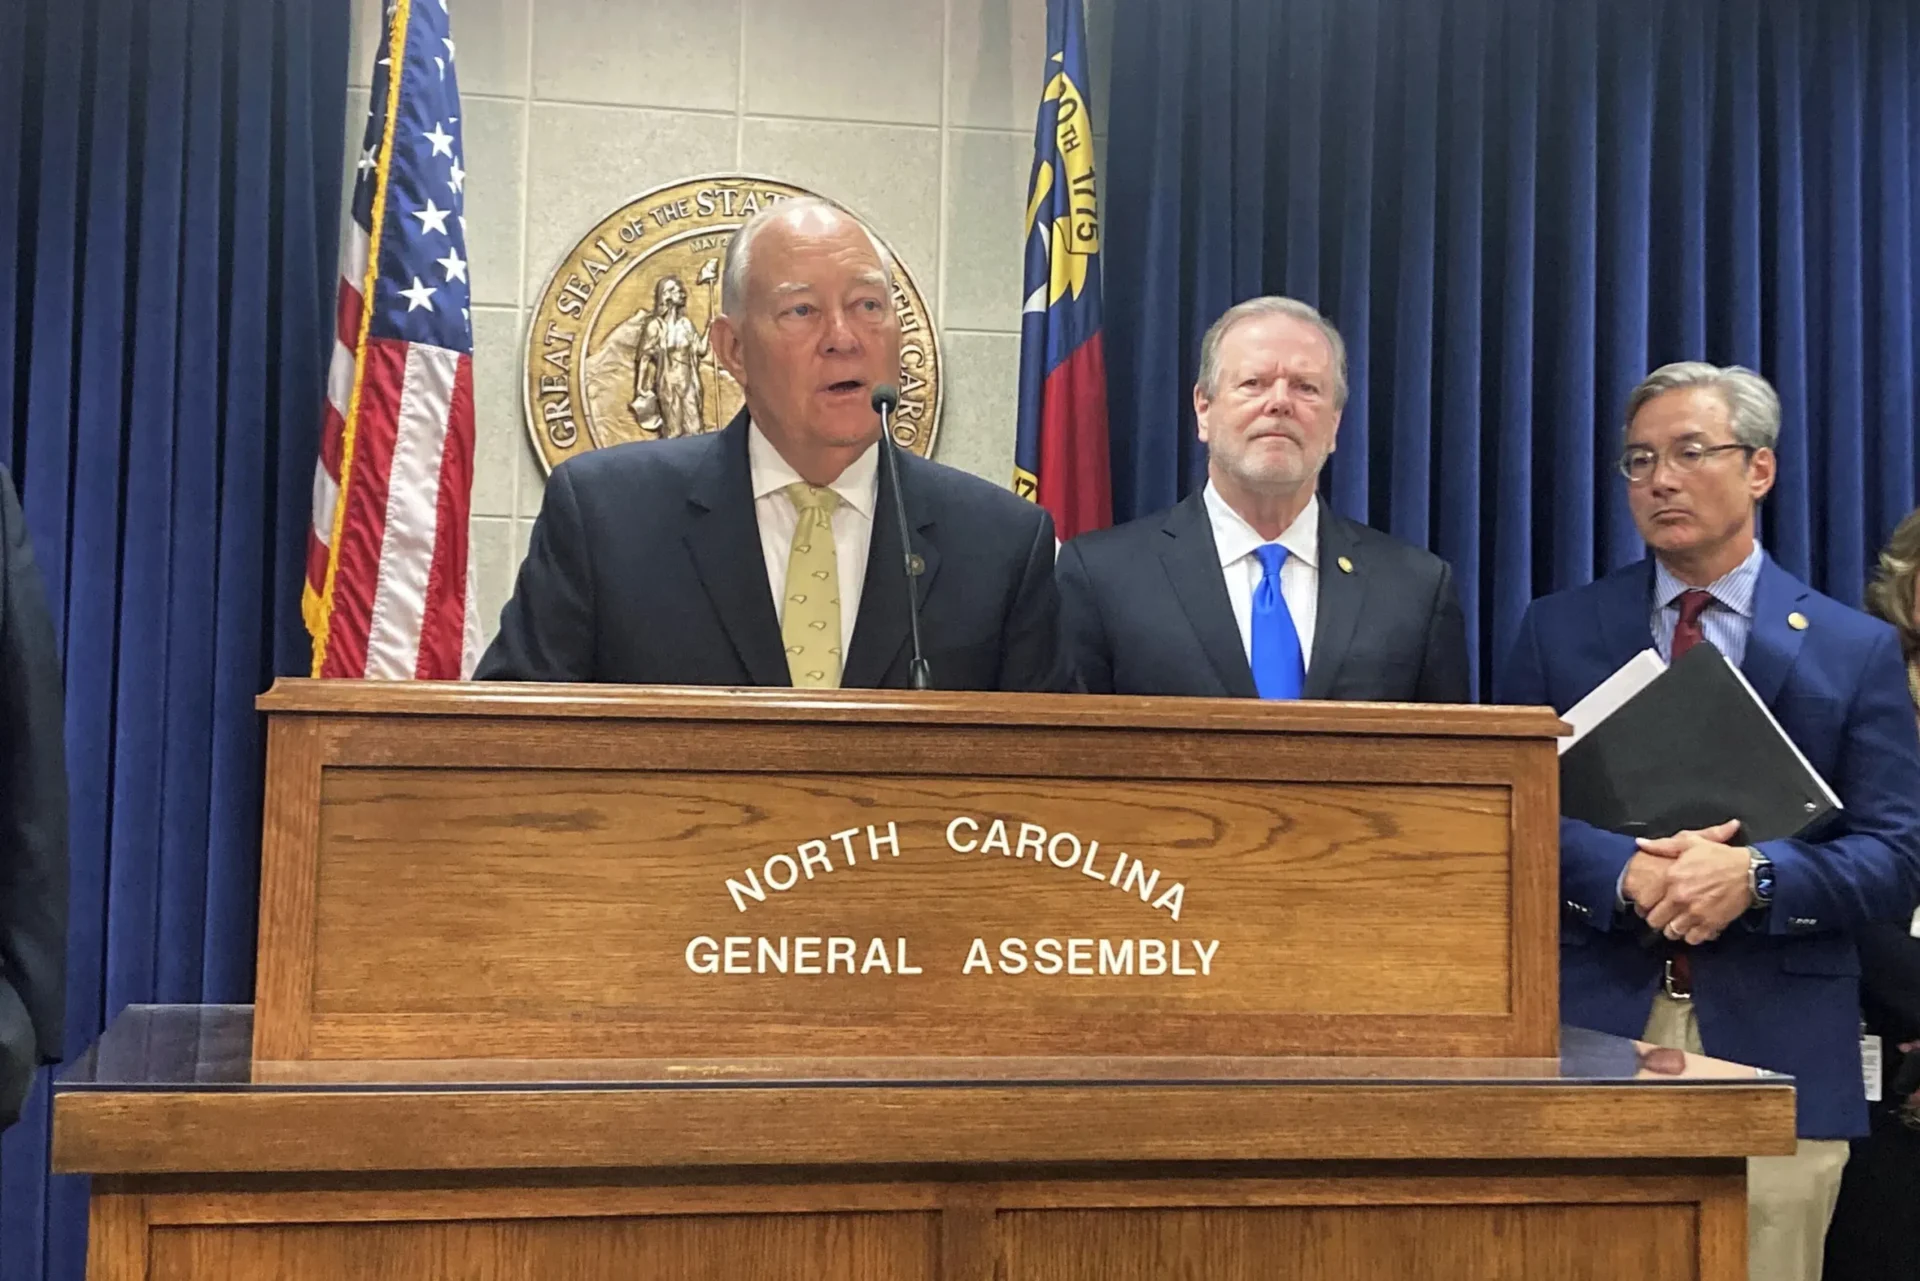 El Senado de Carolina del Norte presenta el presupuesto estatal con recortes de impuestos más profundos y aumentos más bajos que la propuesta de la Cámara